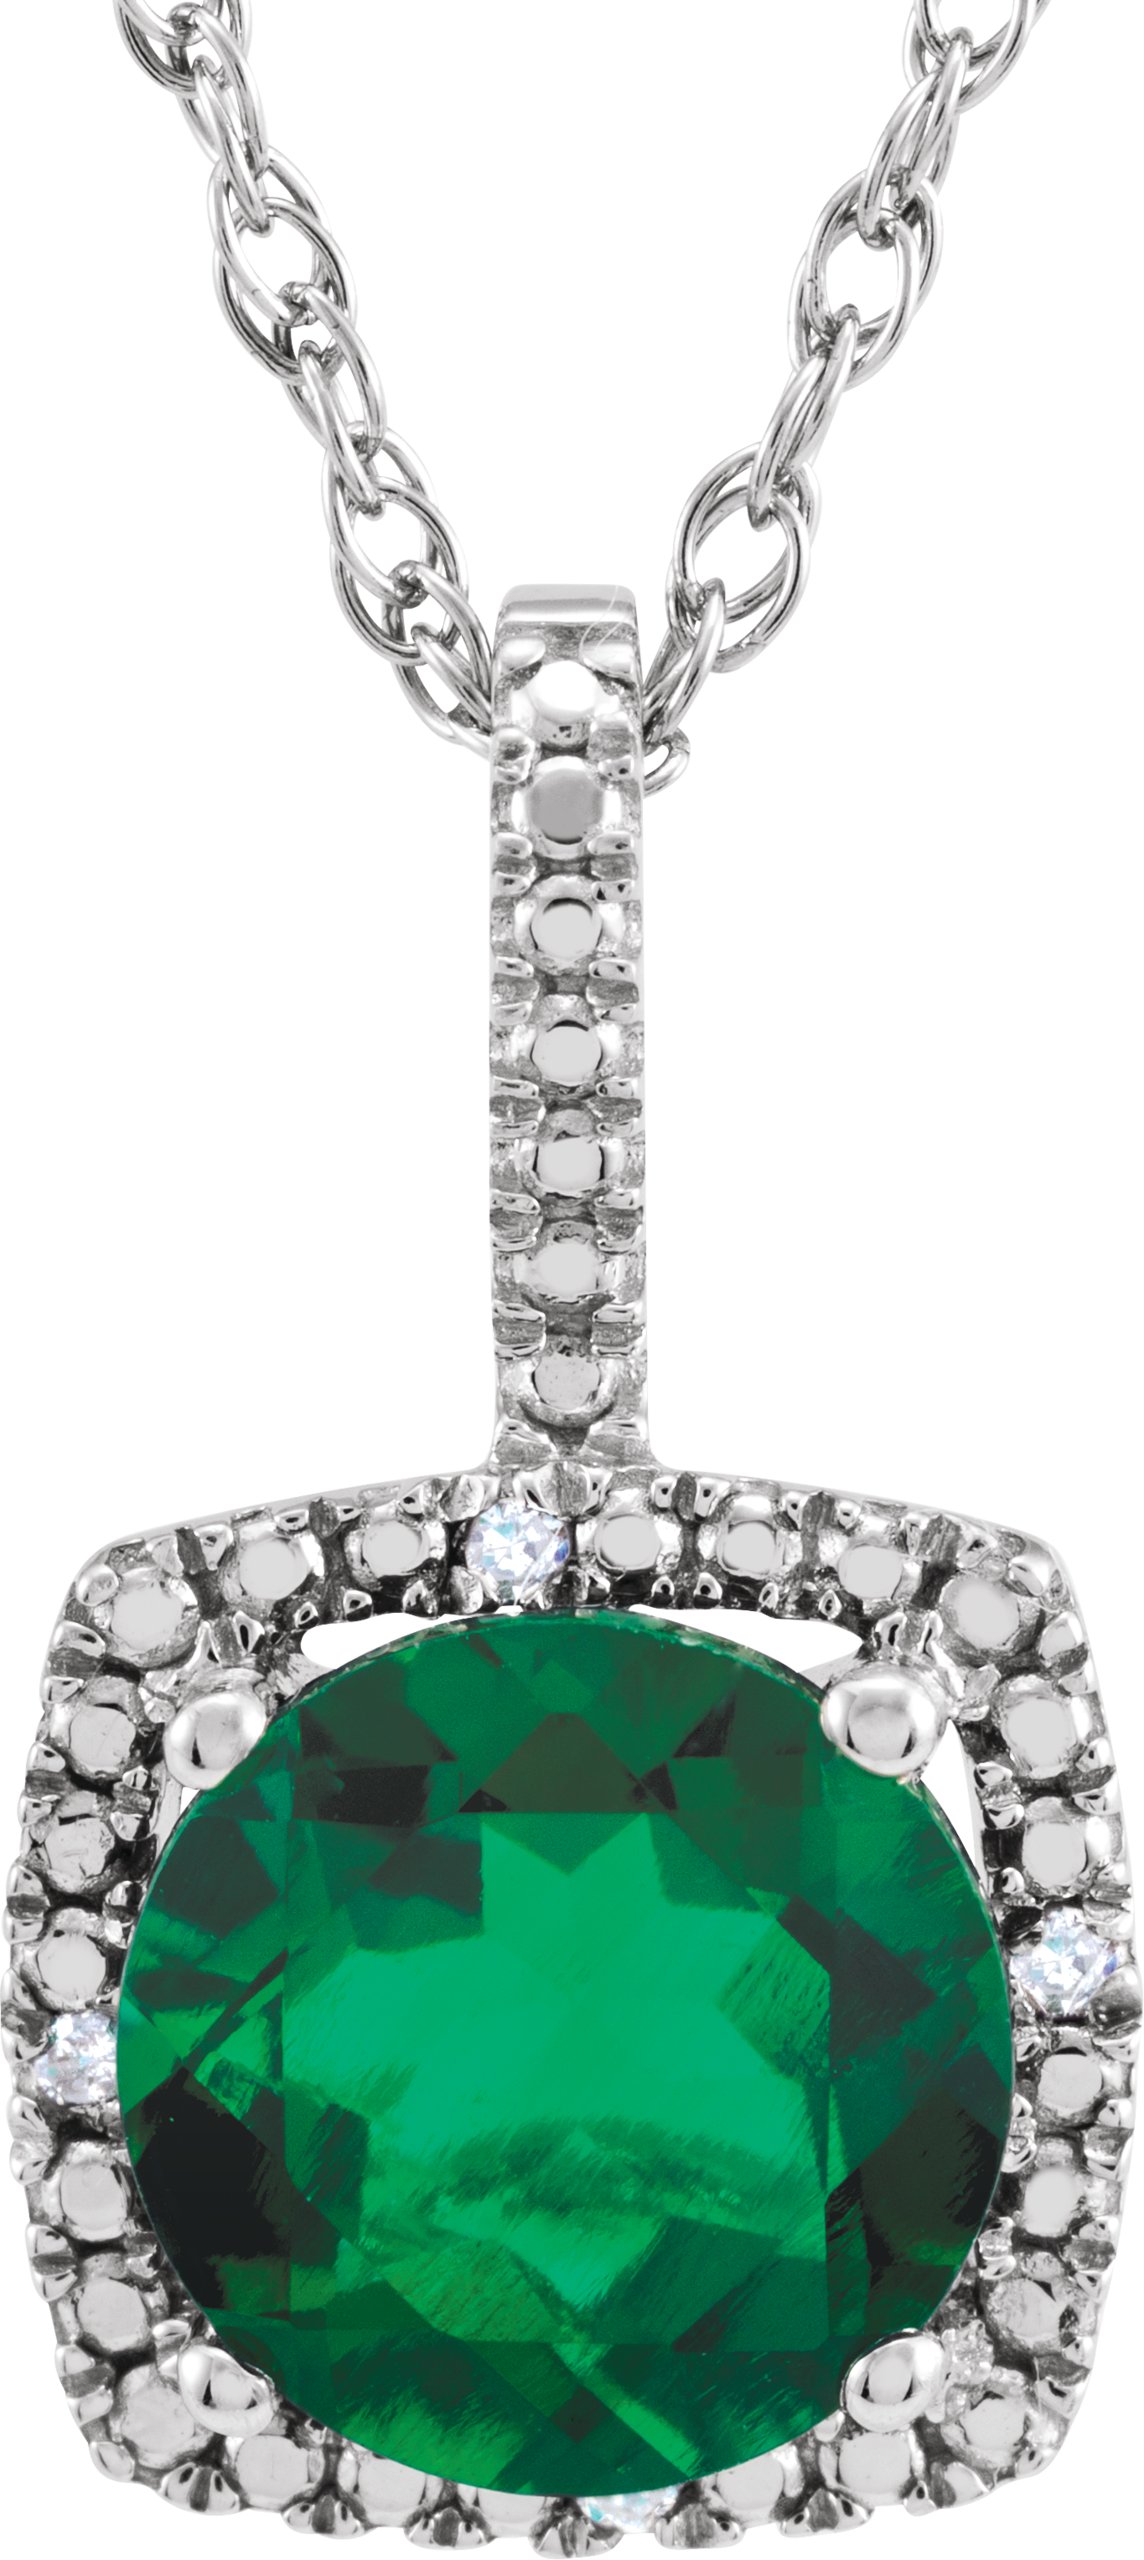 Gemstone & Diamond Halo-Styled Necklace or Semi-Mount